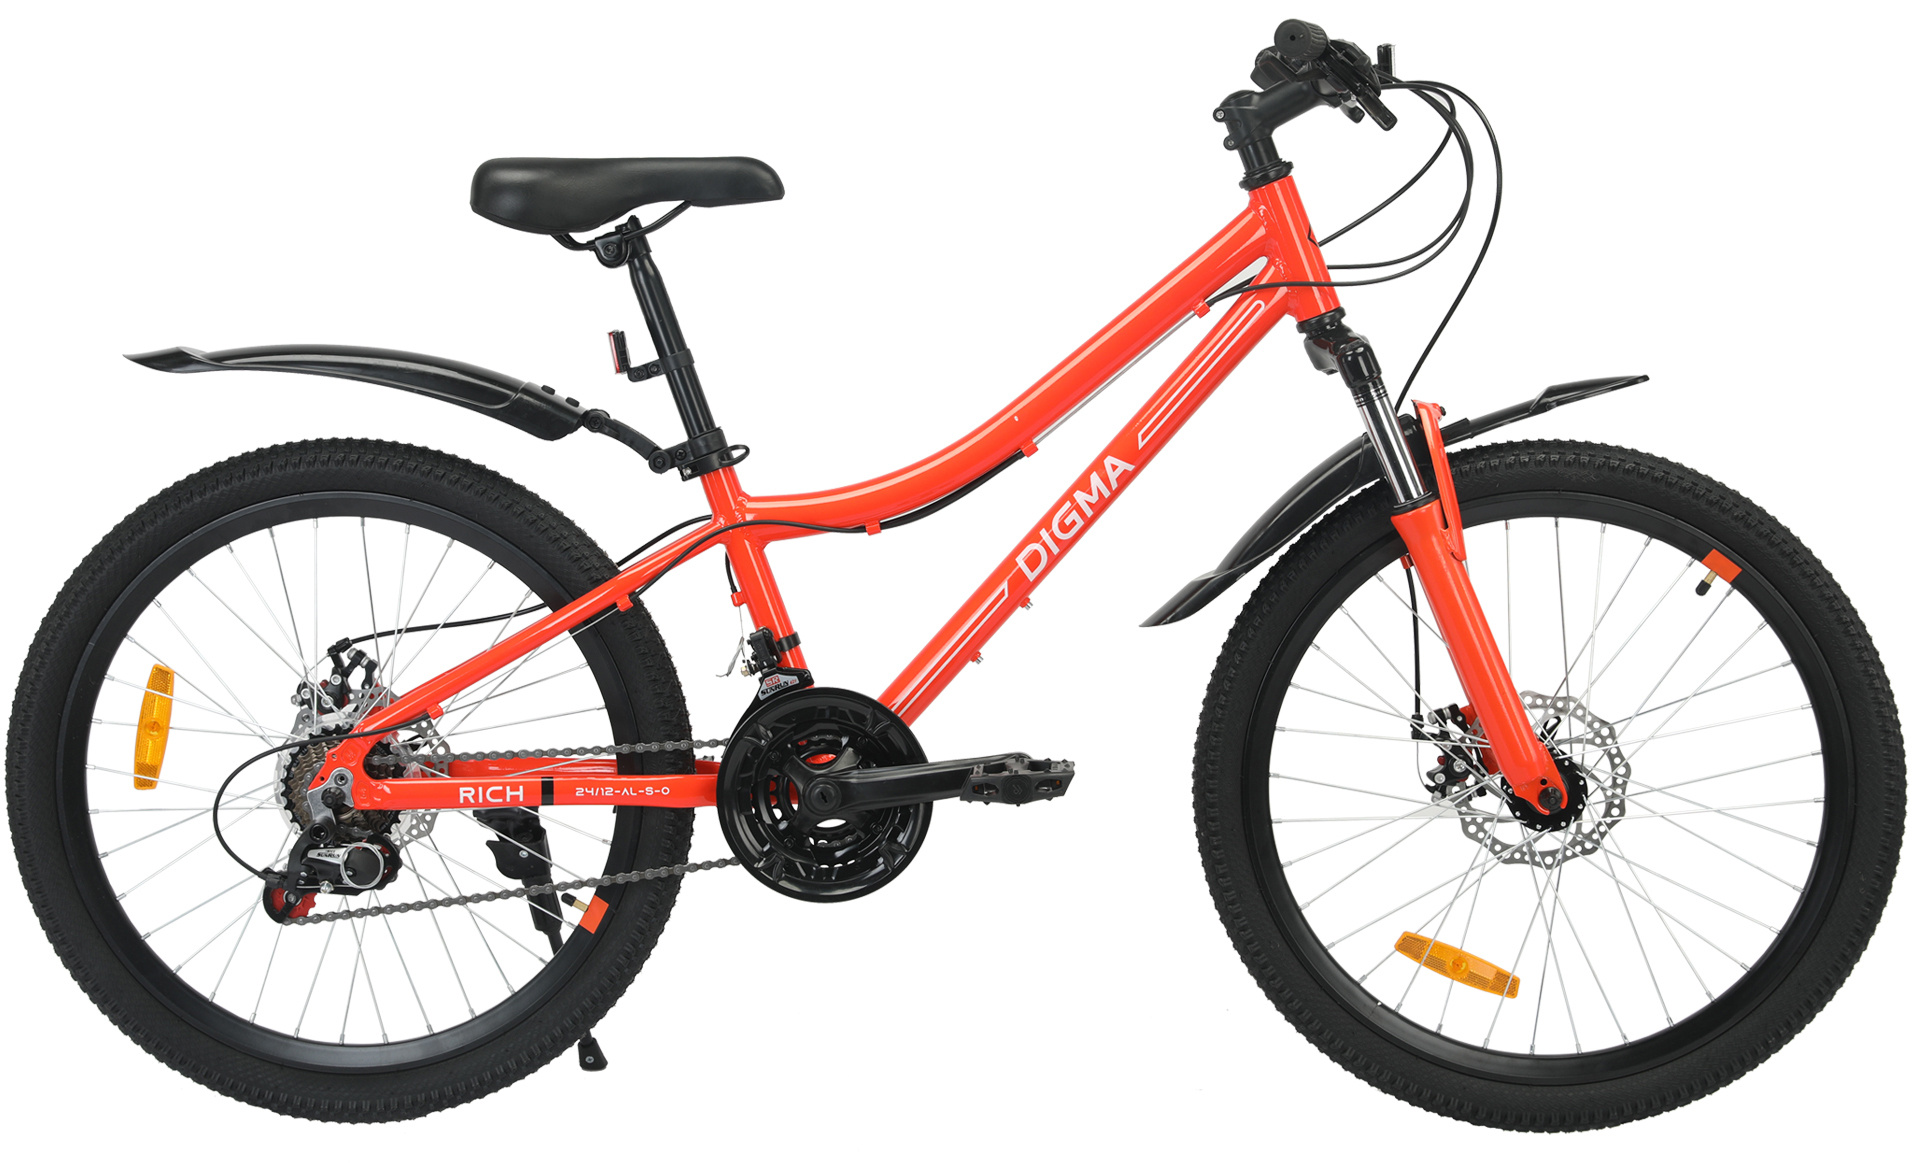 Велосипед Digma Rich оранжевый - фото 7